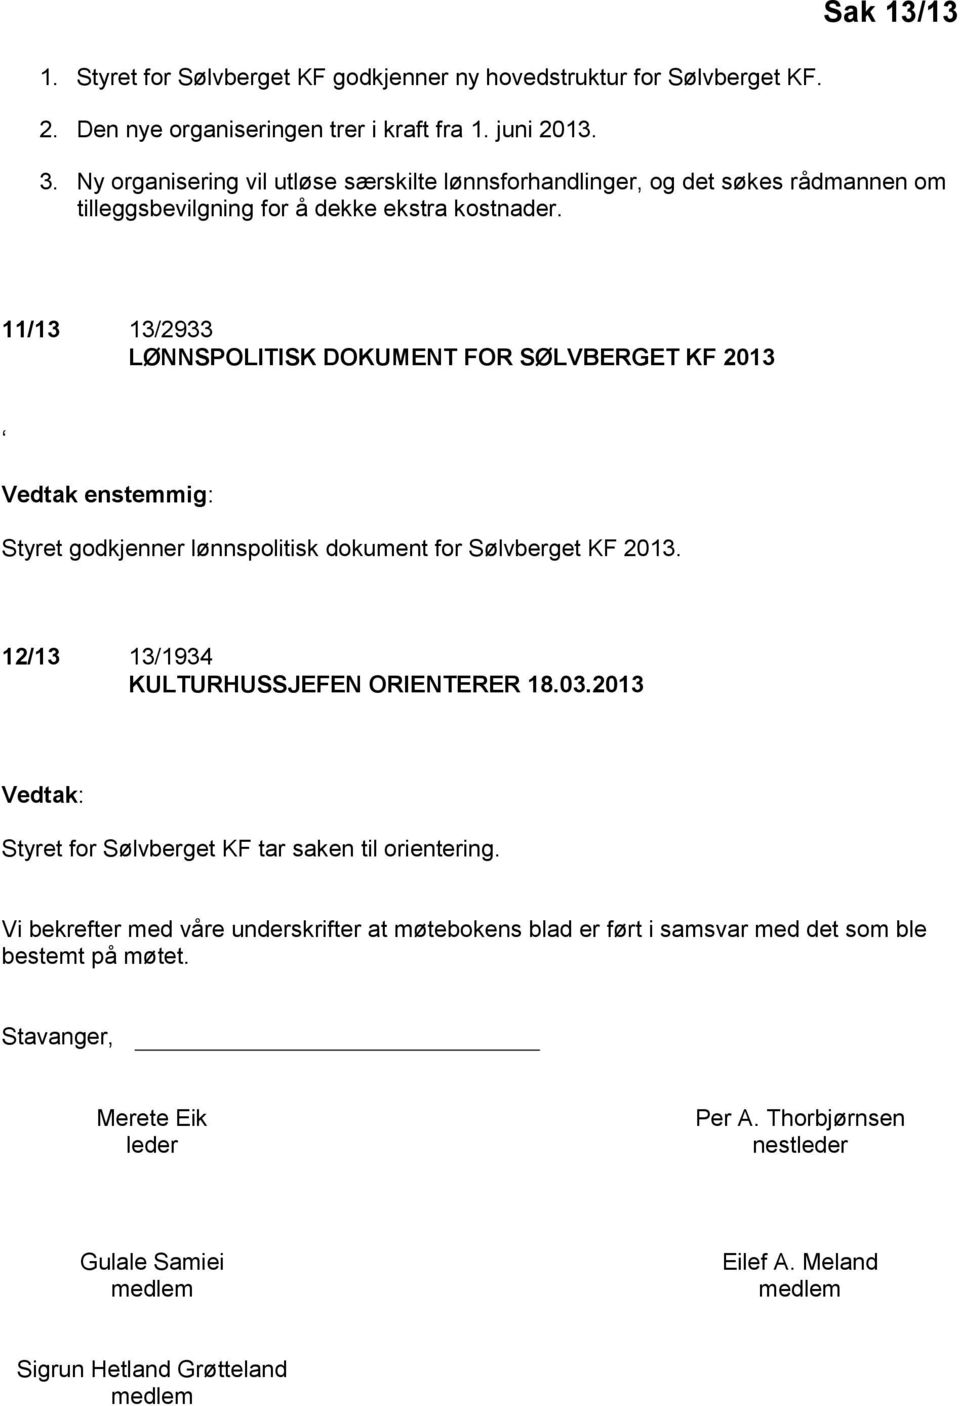 11/13 13/2933 LØNNSPOLITISK DOKUMENT FOR SØLVBERGET KF 2013 Vedtak enstemmig: Styret godkjenner lønnspolitisk dokument for Sølvberget KF 2013. 12/13 13/1934 KULTURHUSSJEFEN ORIENTERER 18.03.